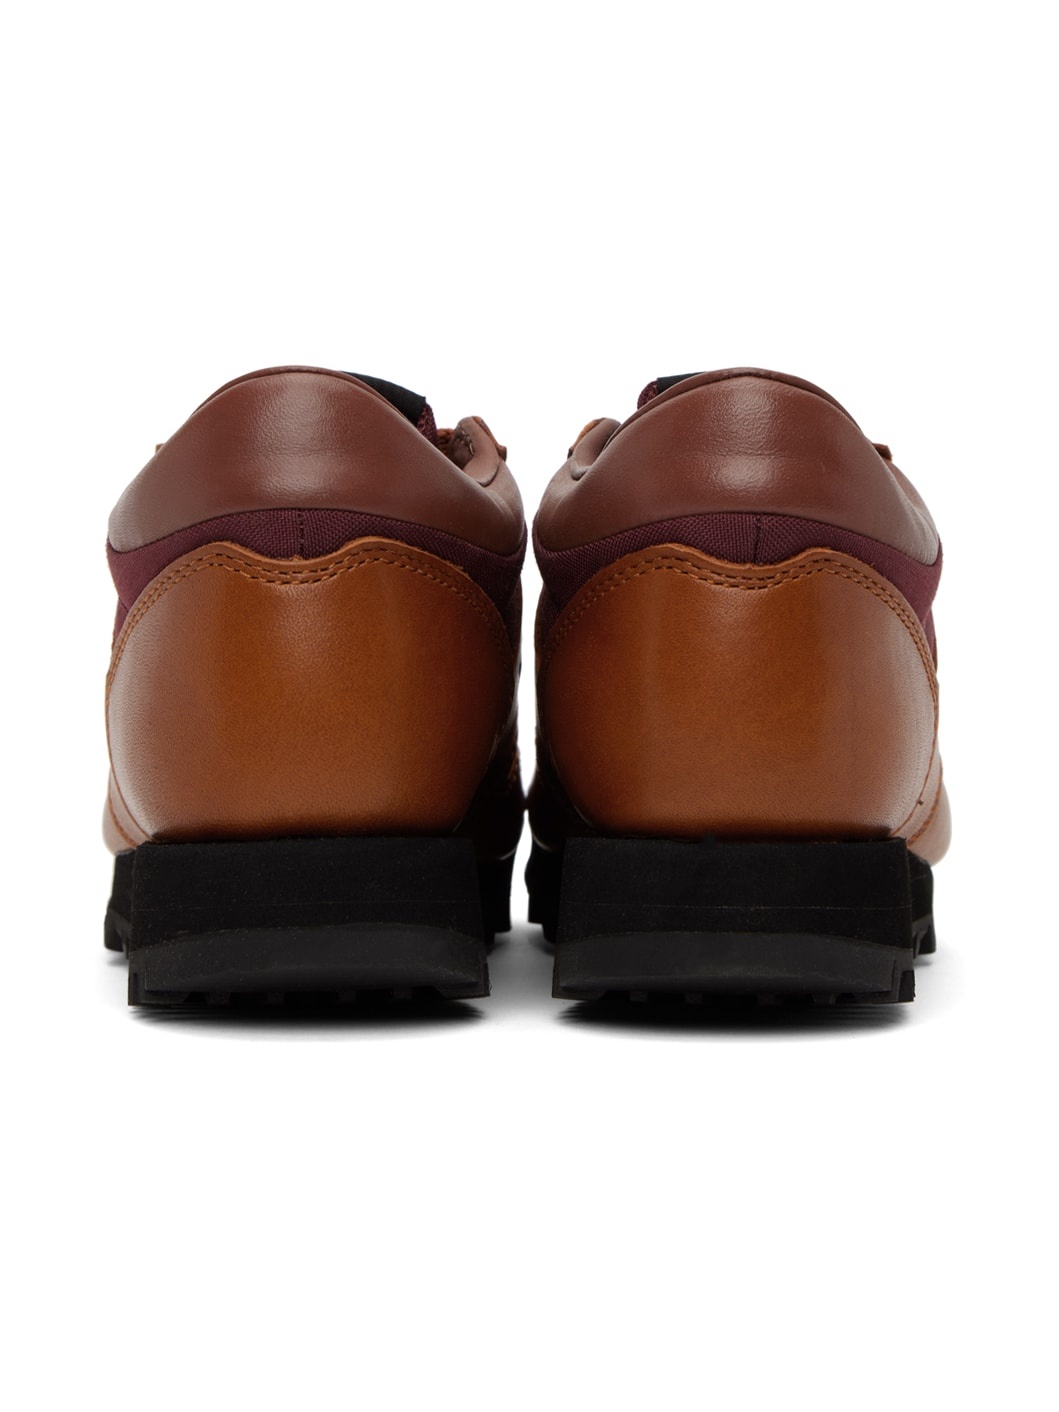 Brown & Burgundy Rainier Low Sneakers - 2